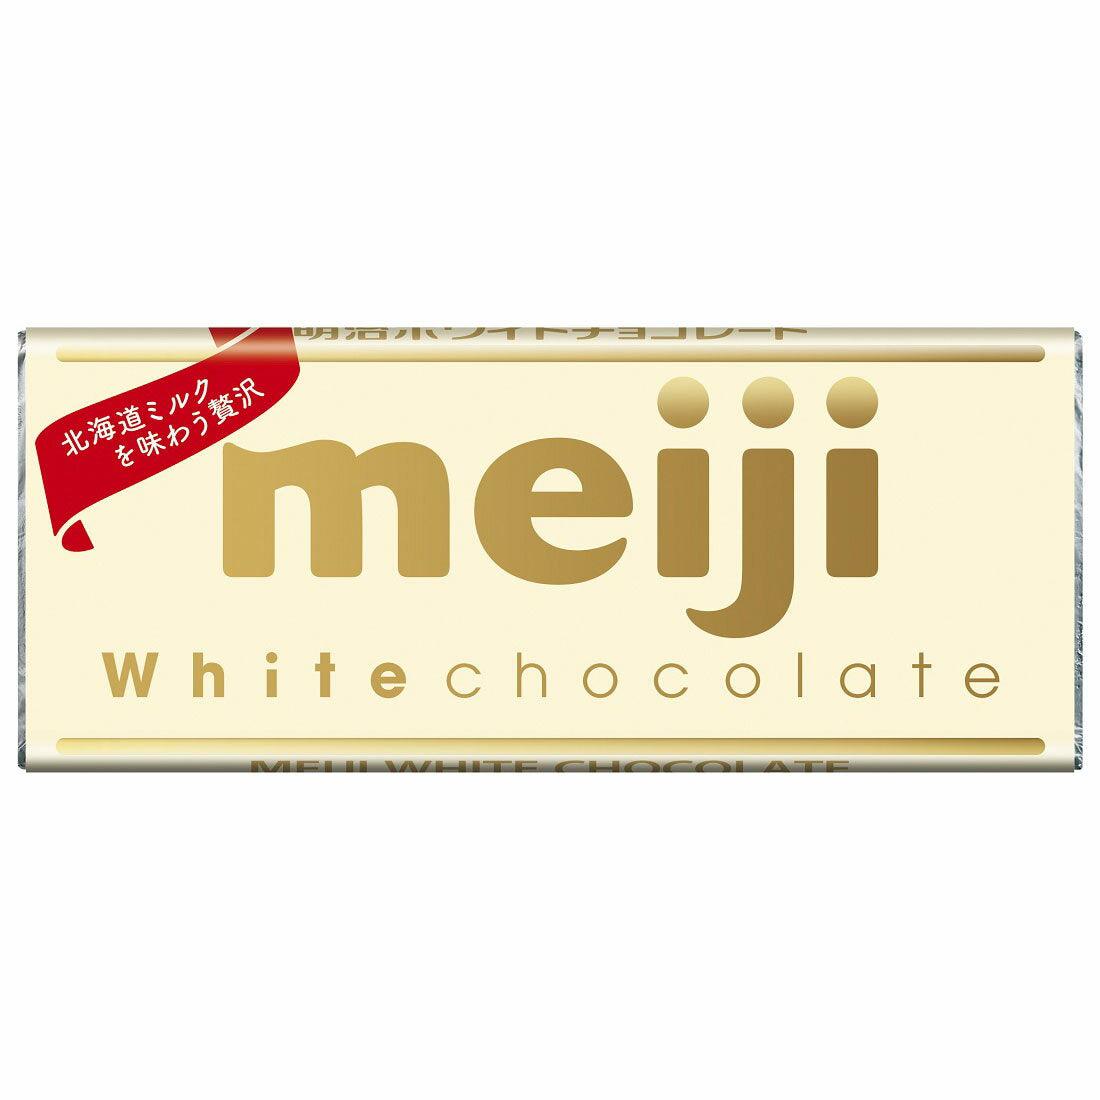 Meiji White Chocolate White Chocolate Bar 40g (Pack of 5)